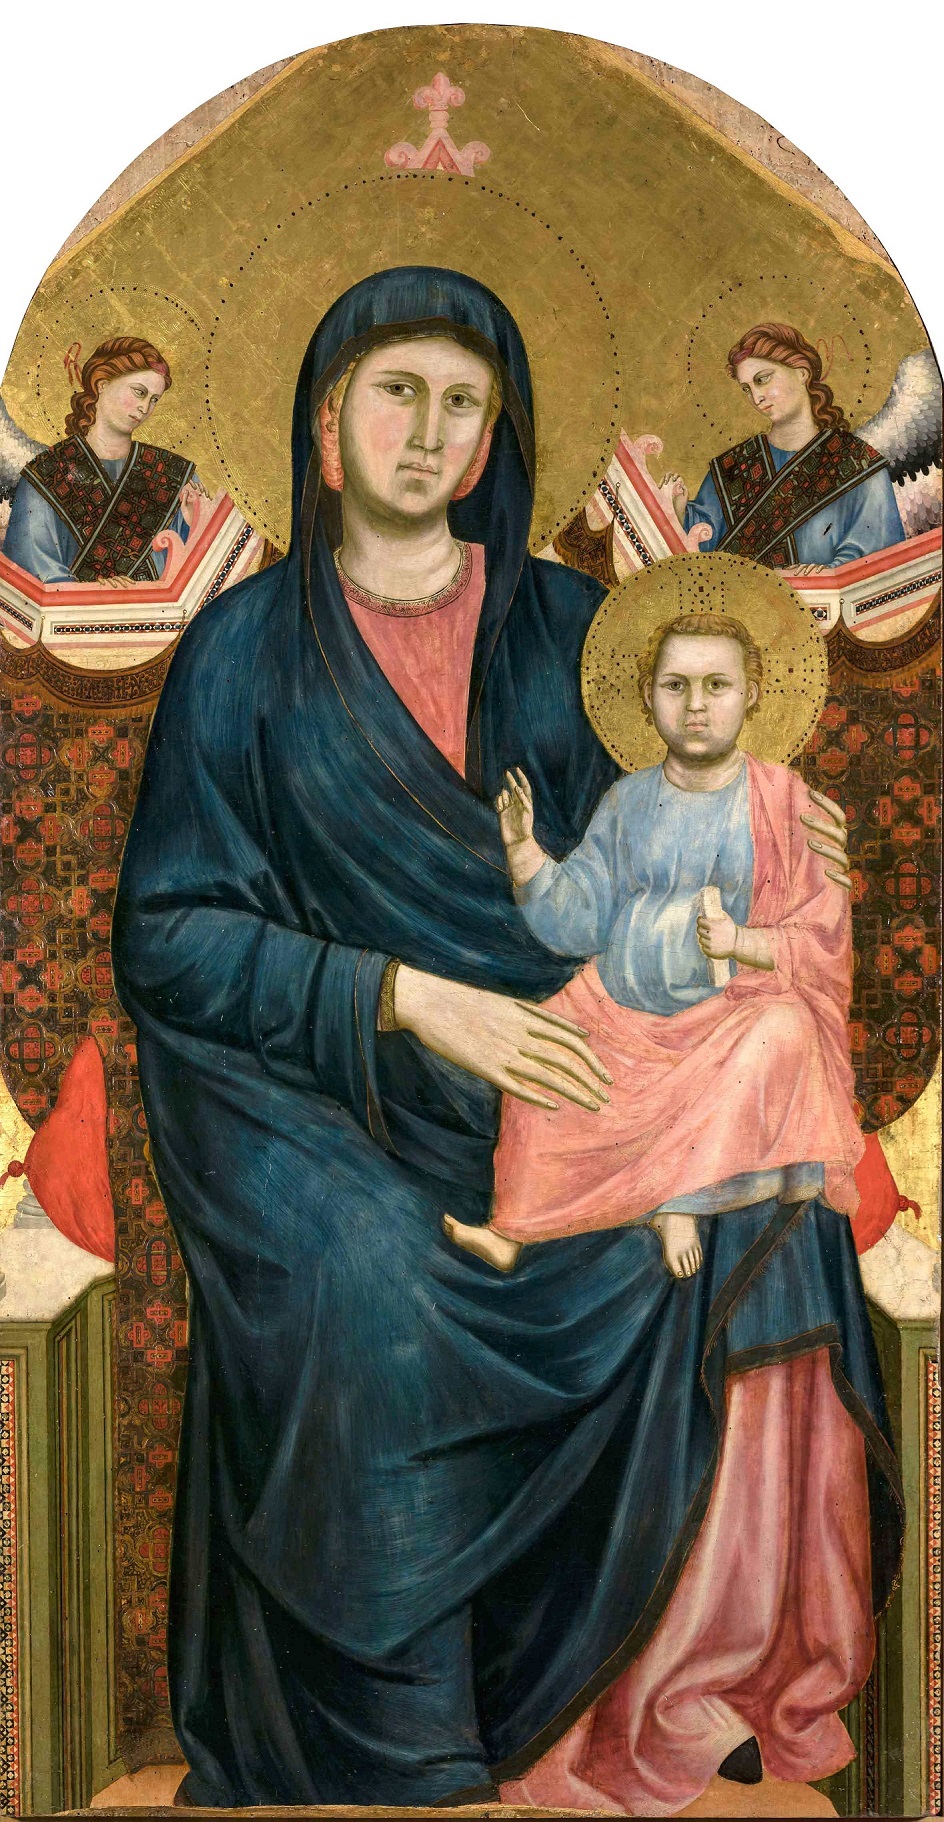 Джотто ди Бондоне. Алтарная картина для церкви Сан-Джорджо-алла-Коста во Флоренции «Мадонна с младенцем и двумя ангелами», 1295-1300